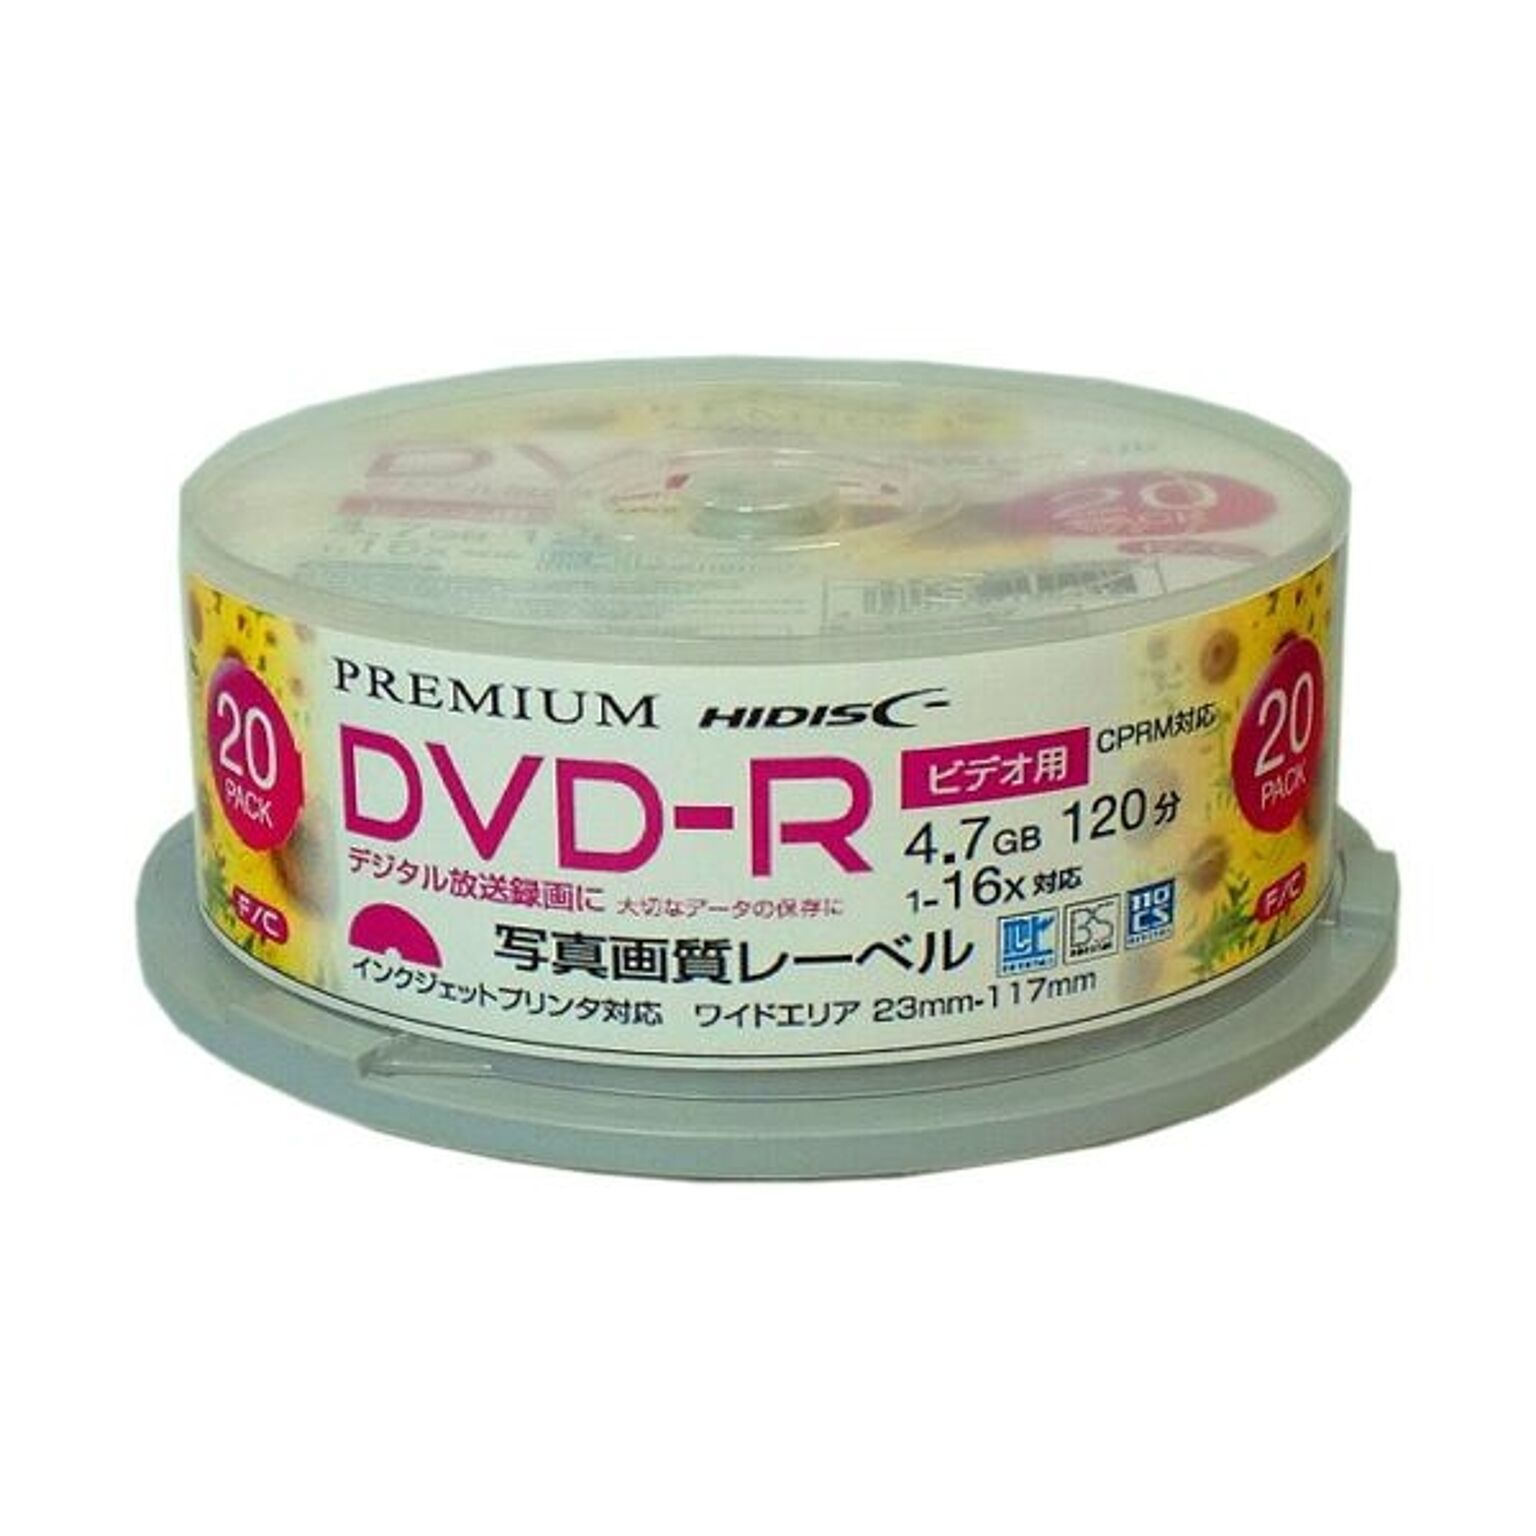 （まとめ）PREMIUM HIDISC 高品質 DVD-R 4.7GB 120分 20枚スピンドル デジタル録画用 CPRM対応 白ワイドプリンタブル写真画質 HDSDR12JCP20SN×3セット